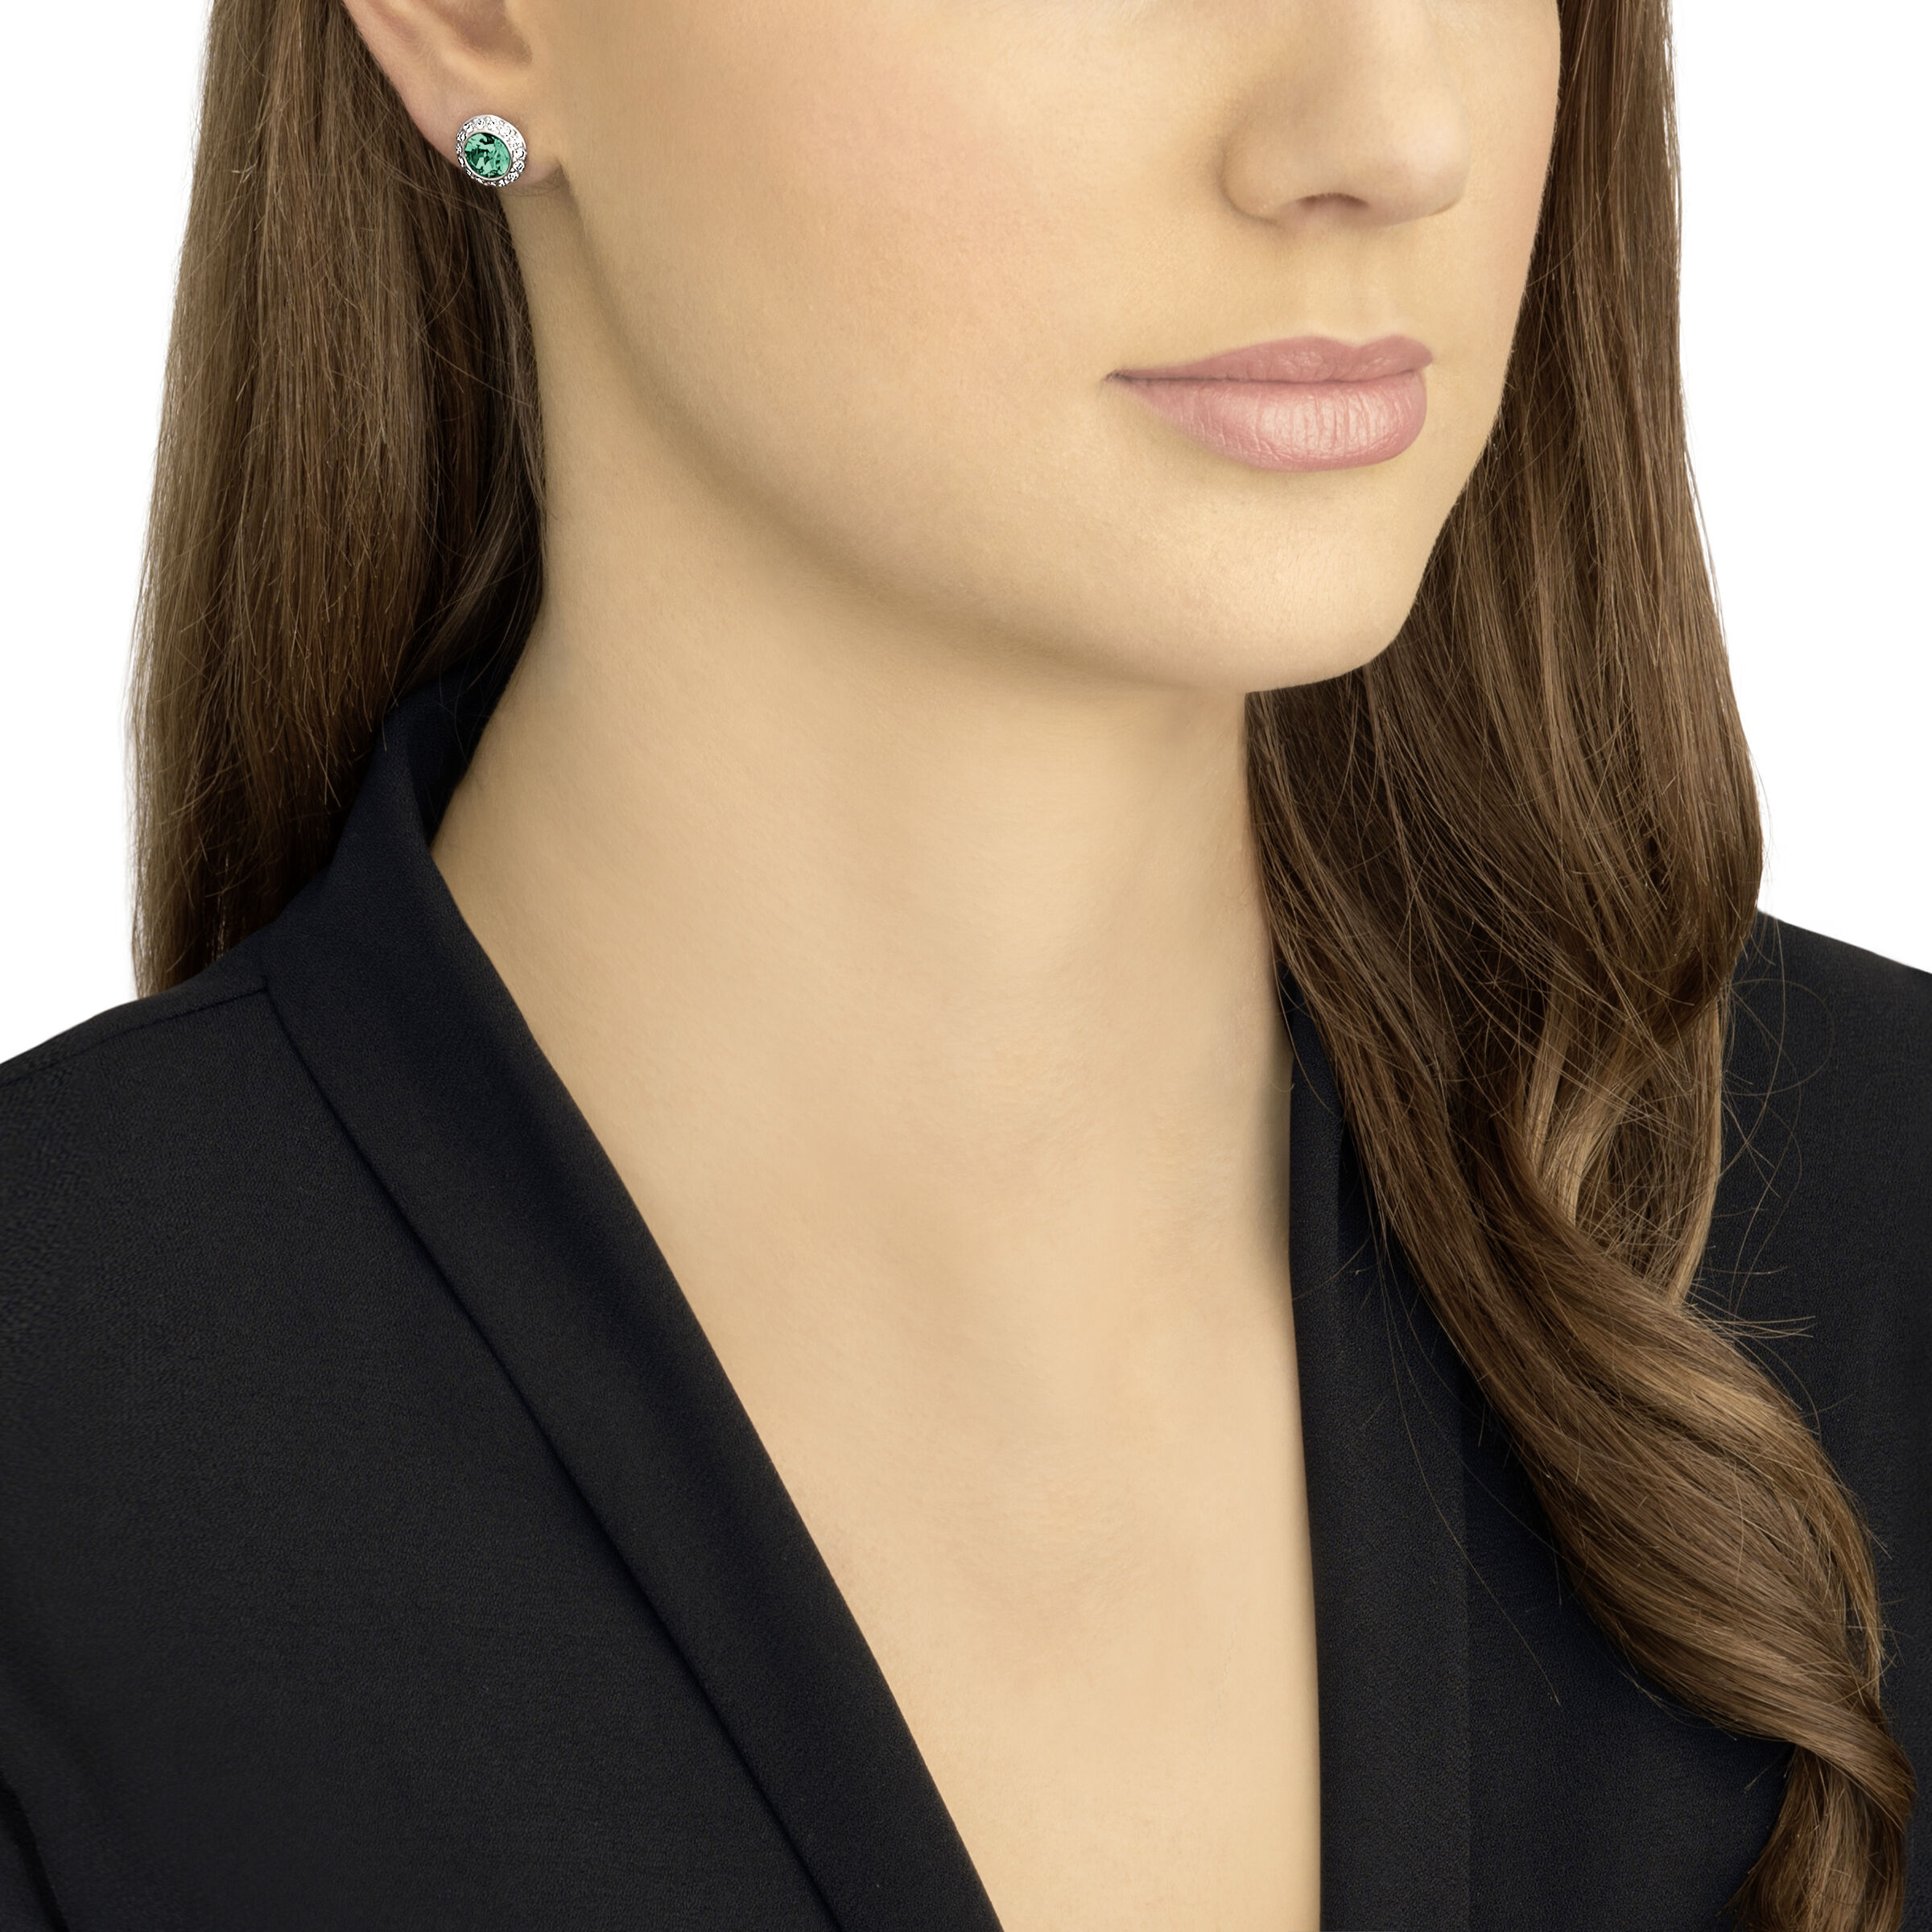 Swarovski Silver Earrings Angelic Crystal Studs Ladies Jewellery NEW  GENUINE | eBay